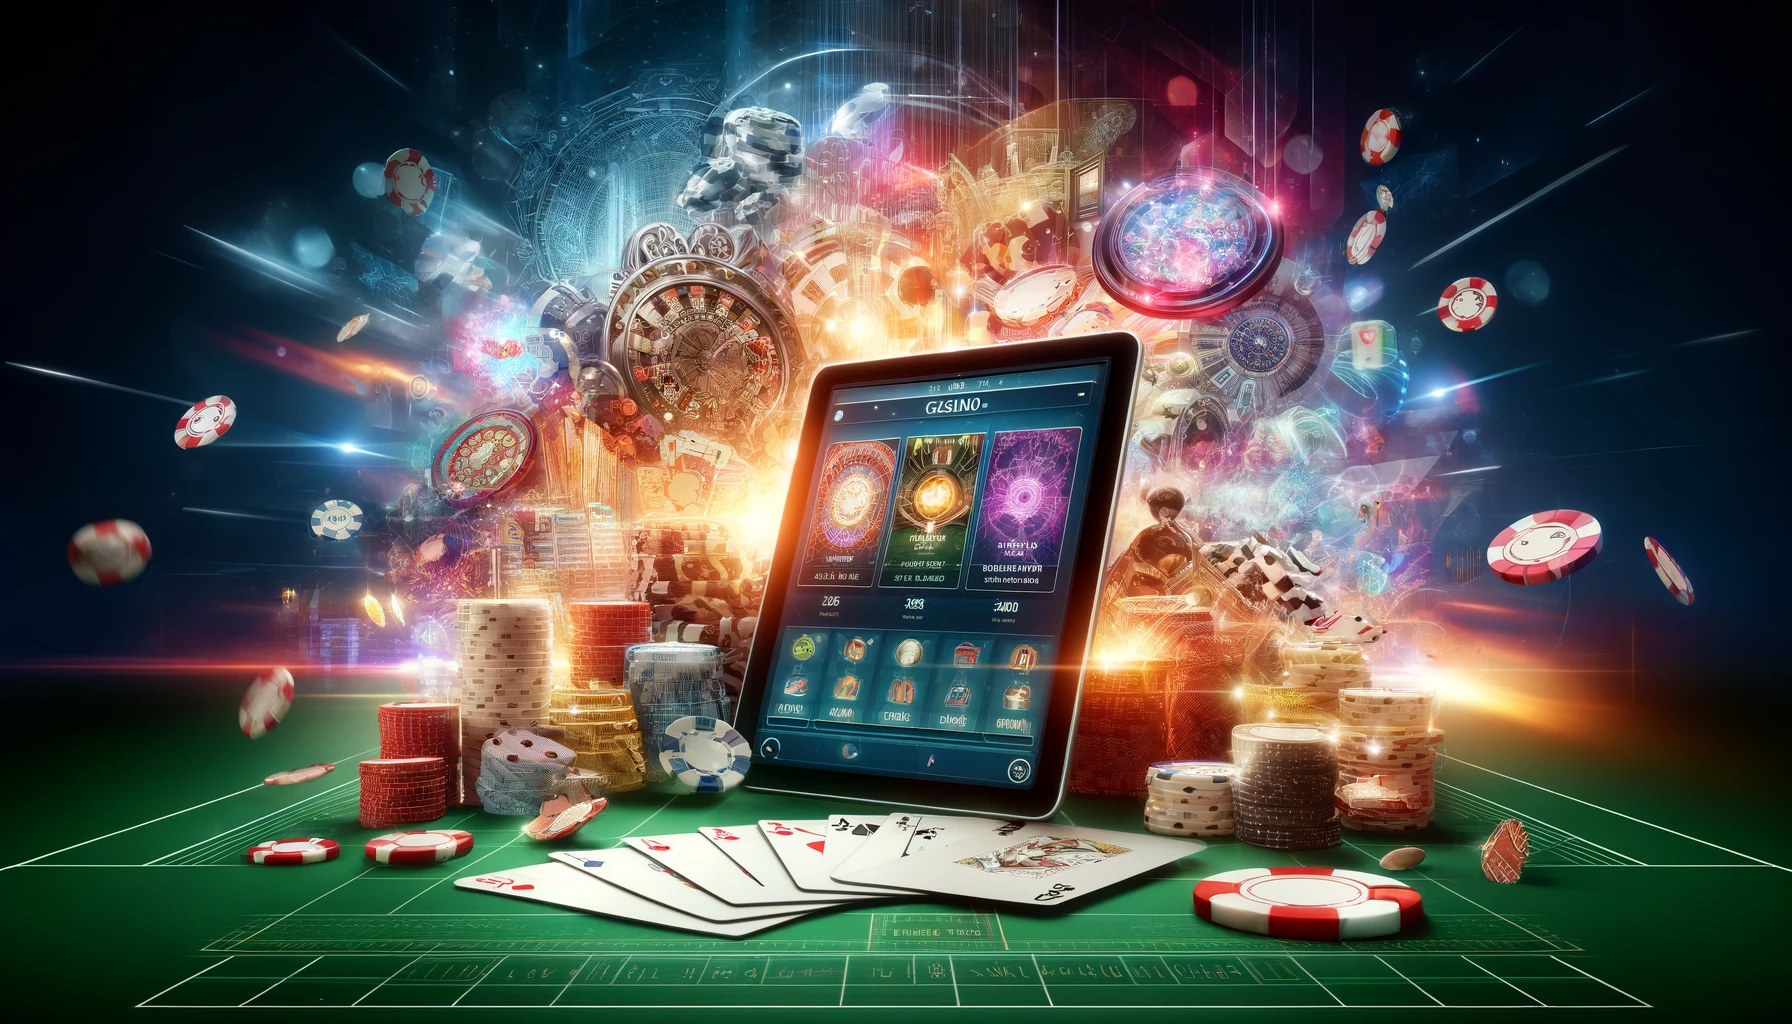 Mistura de elementos de casino tradicional e digital